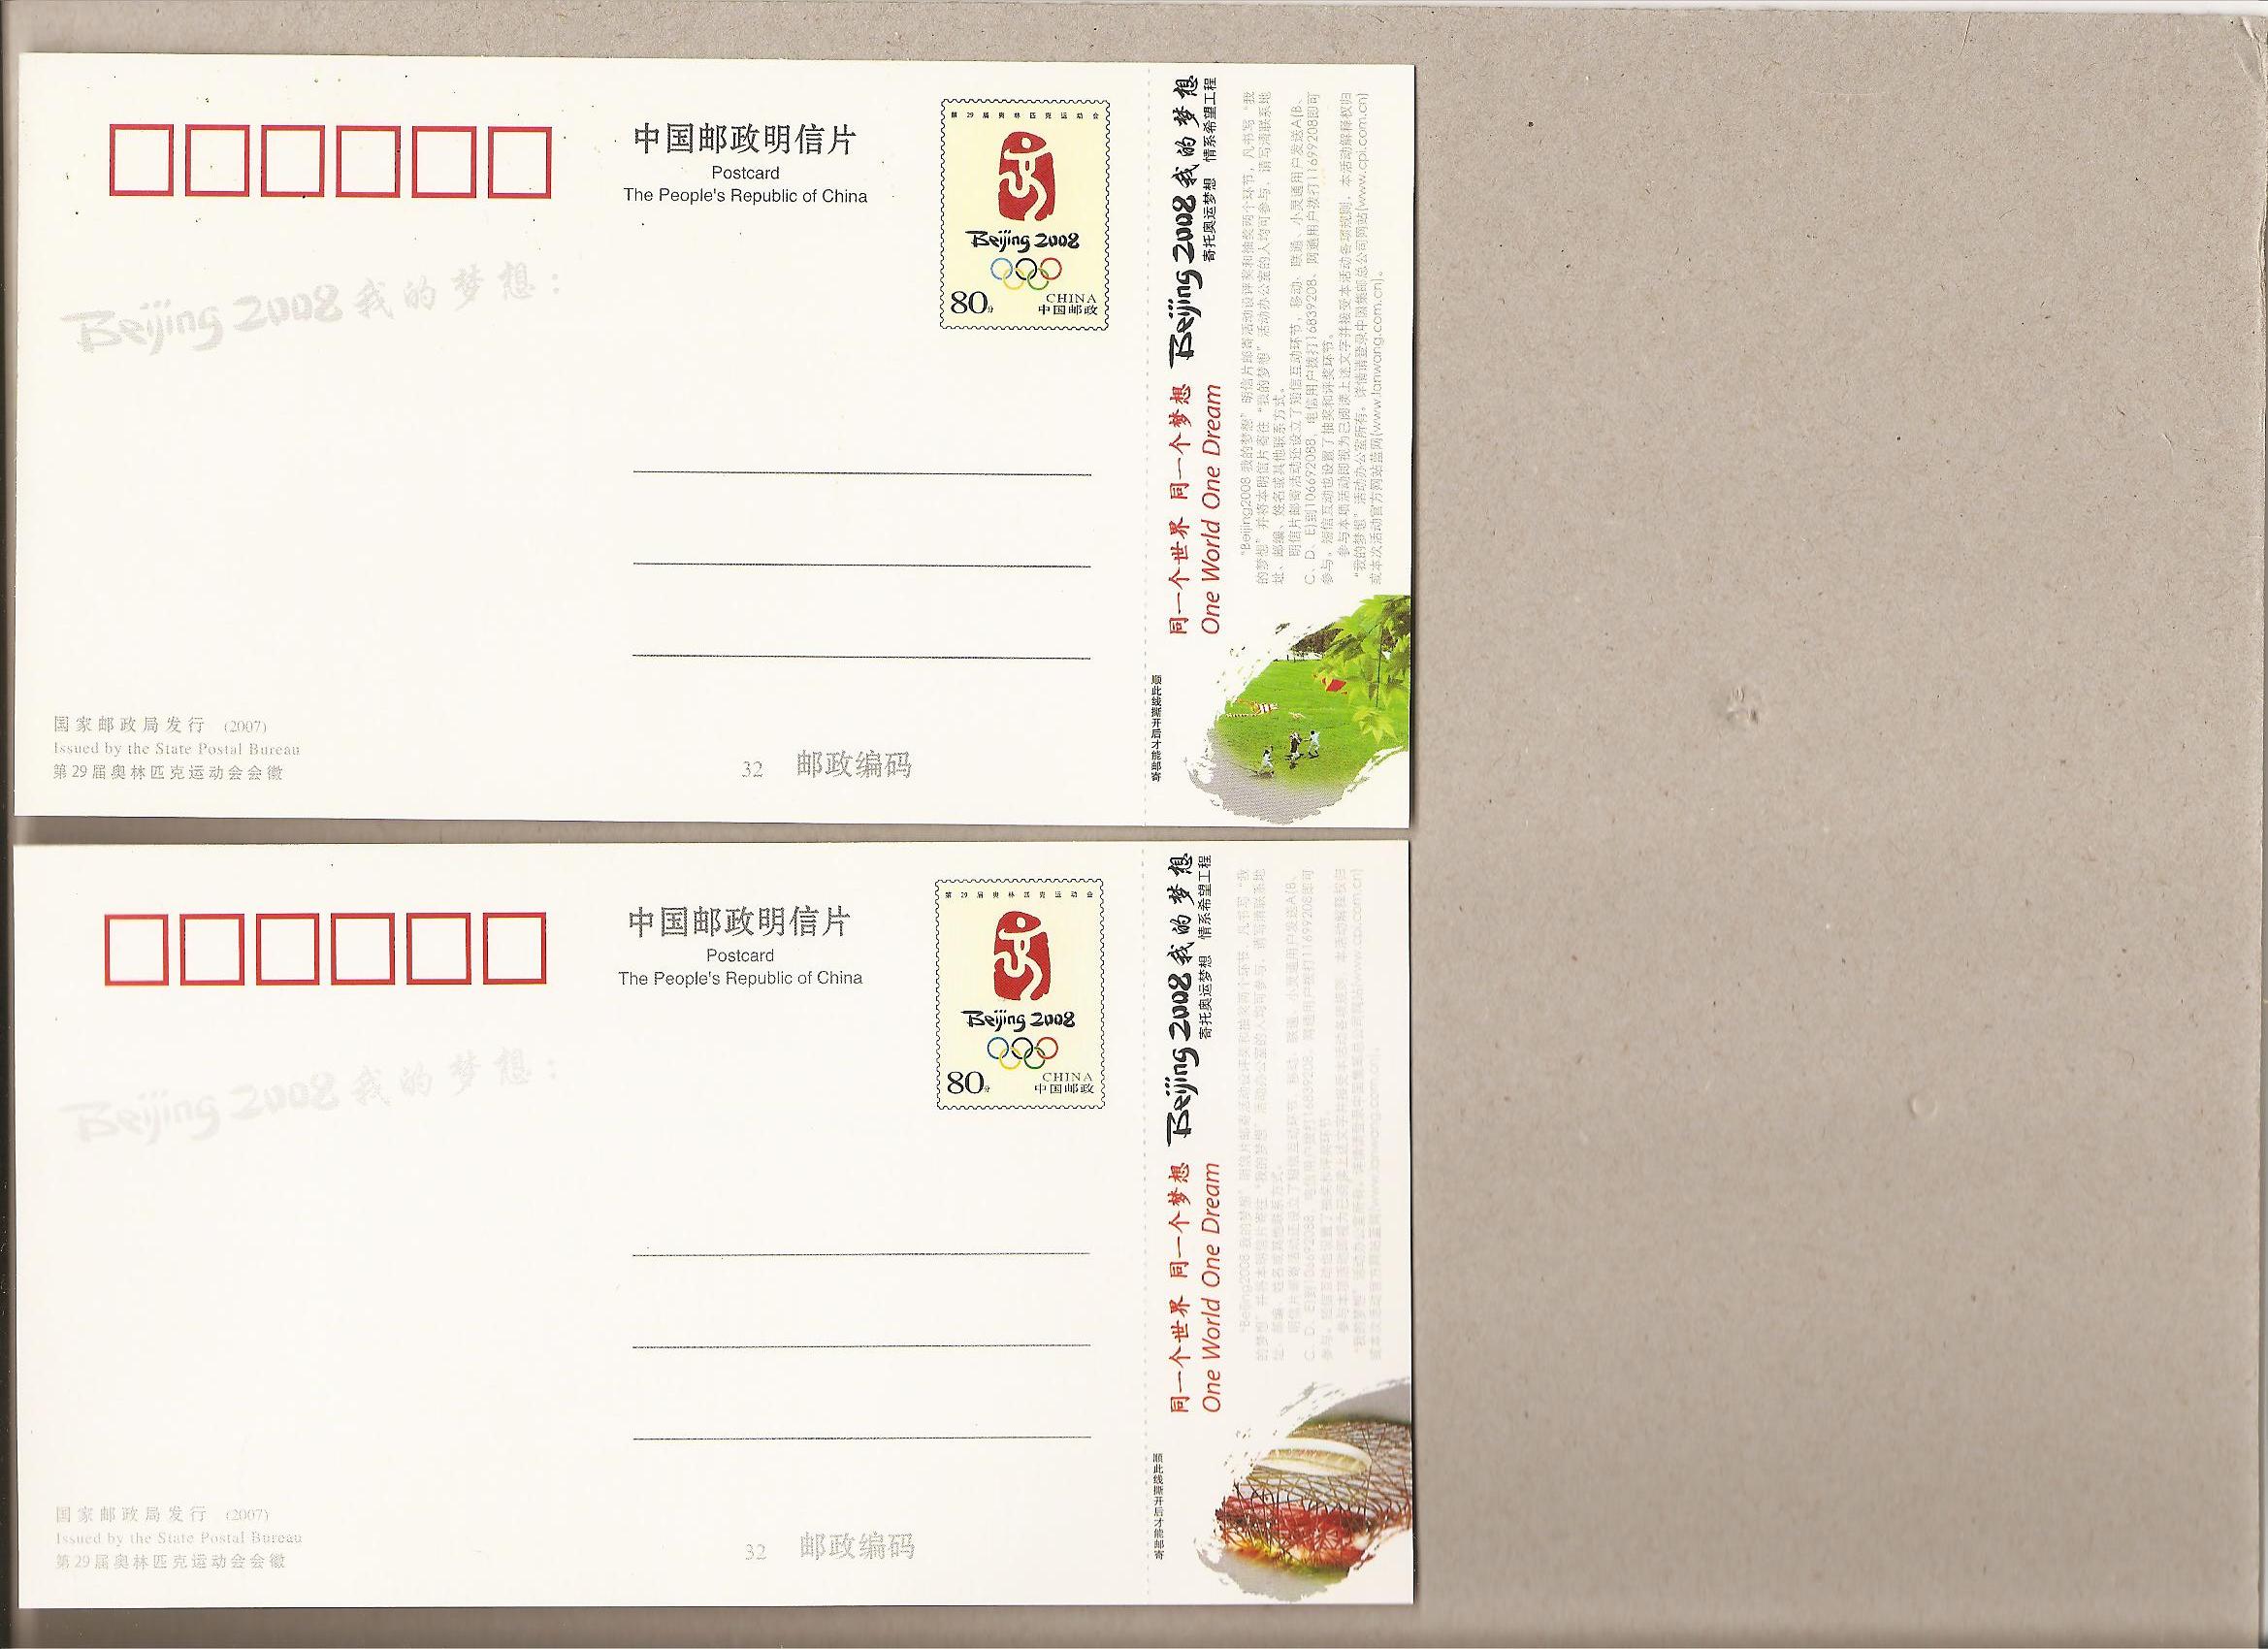 39176 - Cina - 5 cartoline postali nuove in contenitore: Pechino 2008 - non visibile per intero